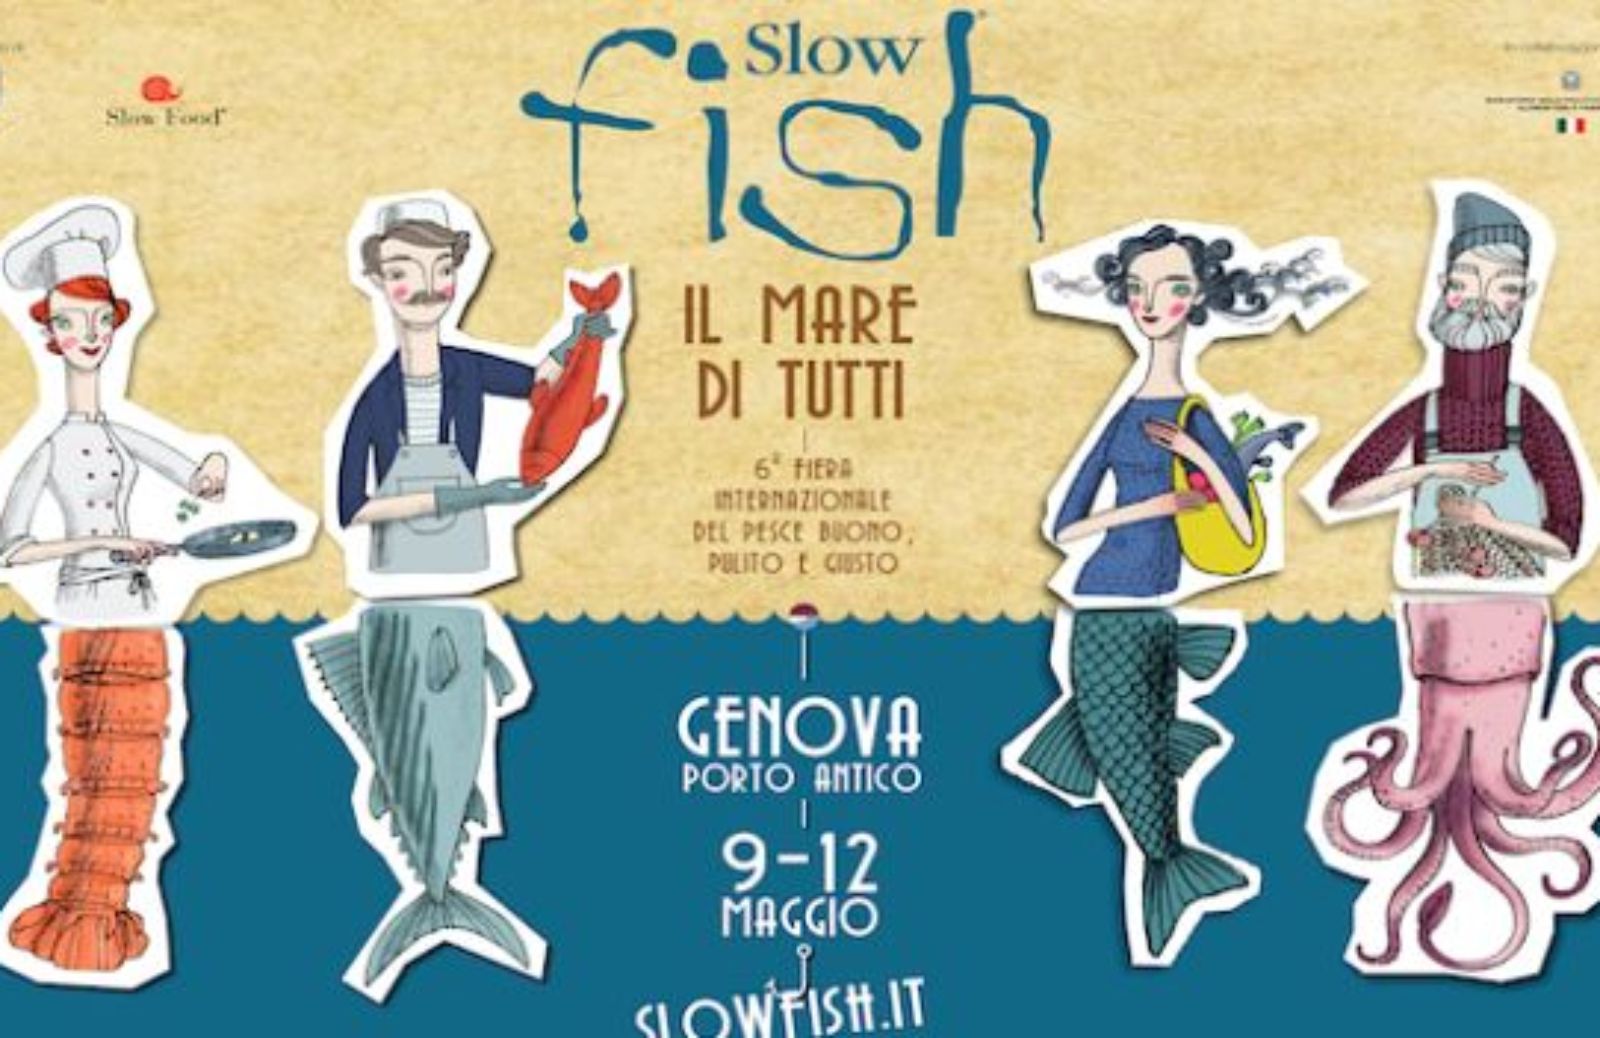 Come partecipare a Slow Fish 2013